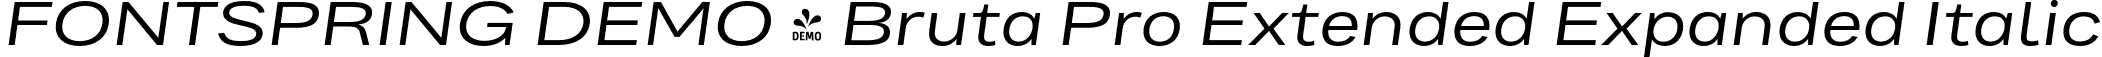 FONTSPRING DEMO - Bruta Pro Extended Expanded Italic font | Fontspring-DEMO-brutaproextended-regularitalic.otf